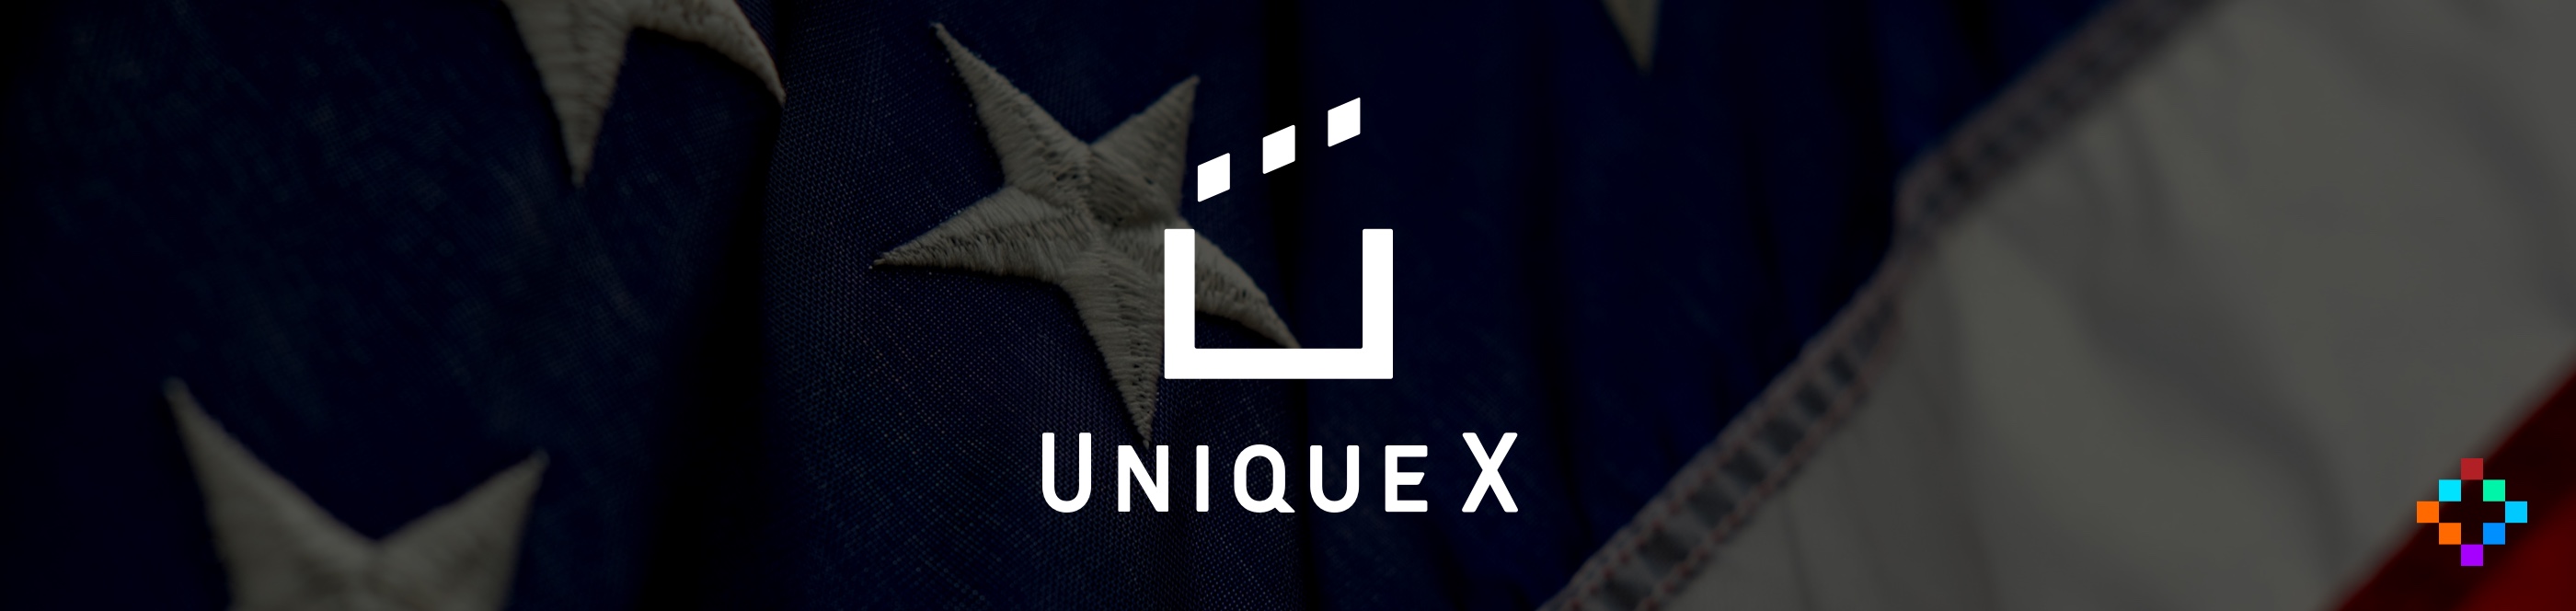 Unique X USA